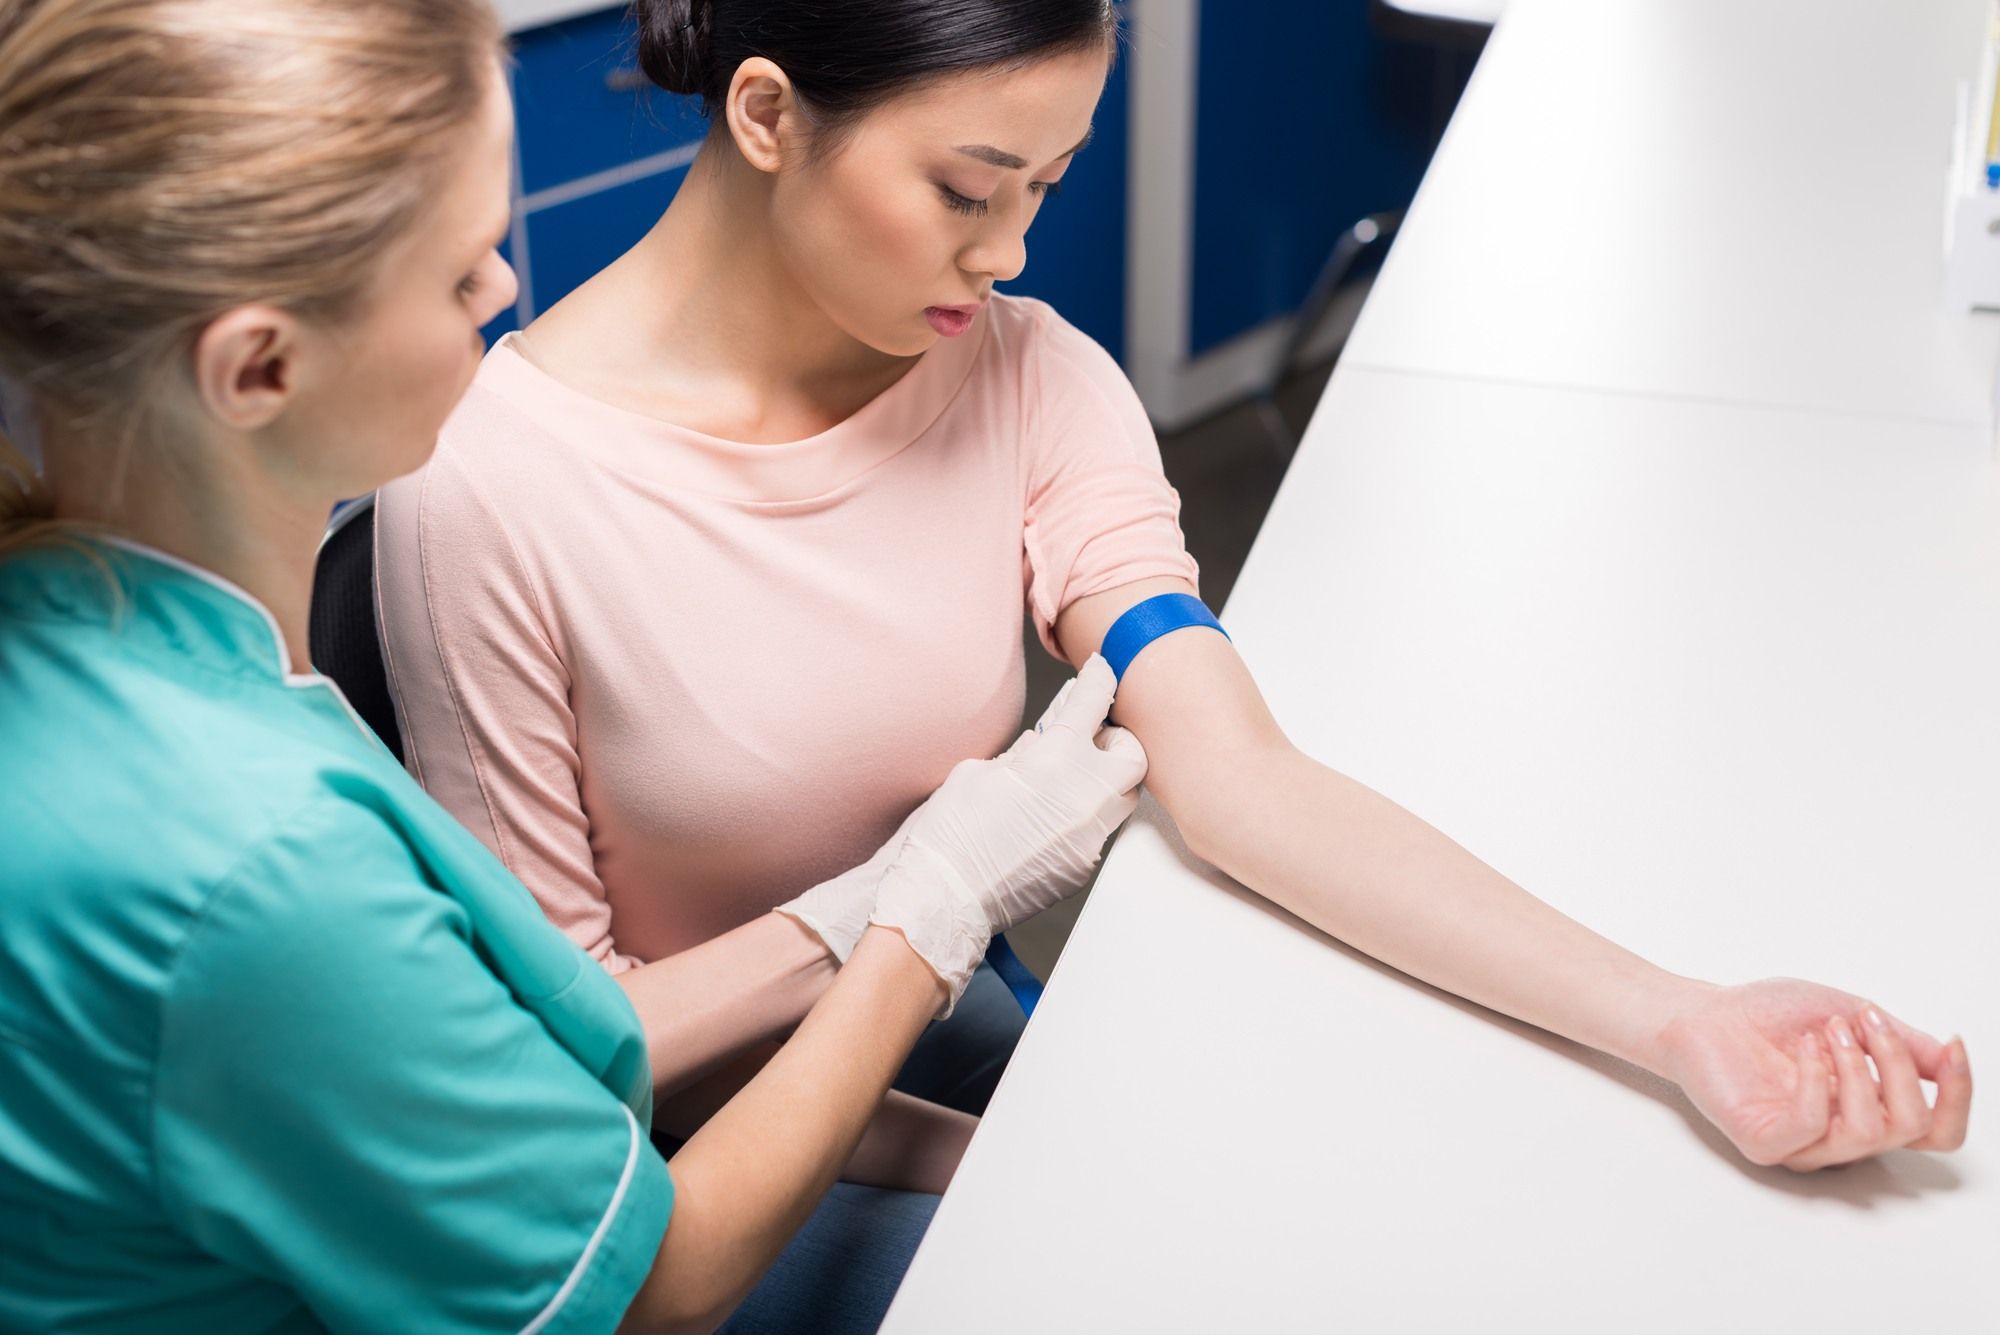 Female nurse preps female patient's arm for blood draw